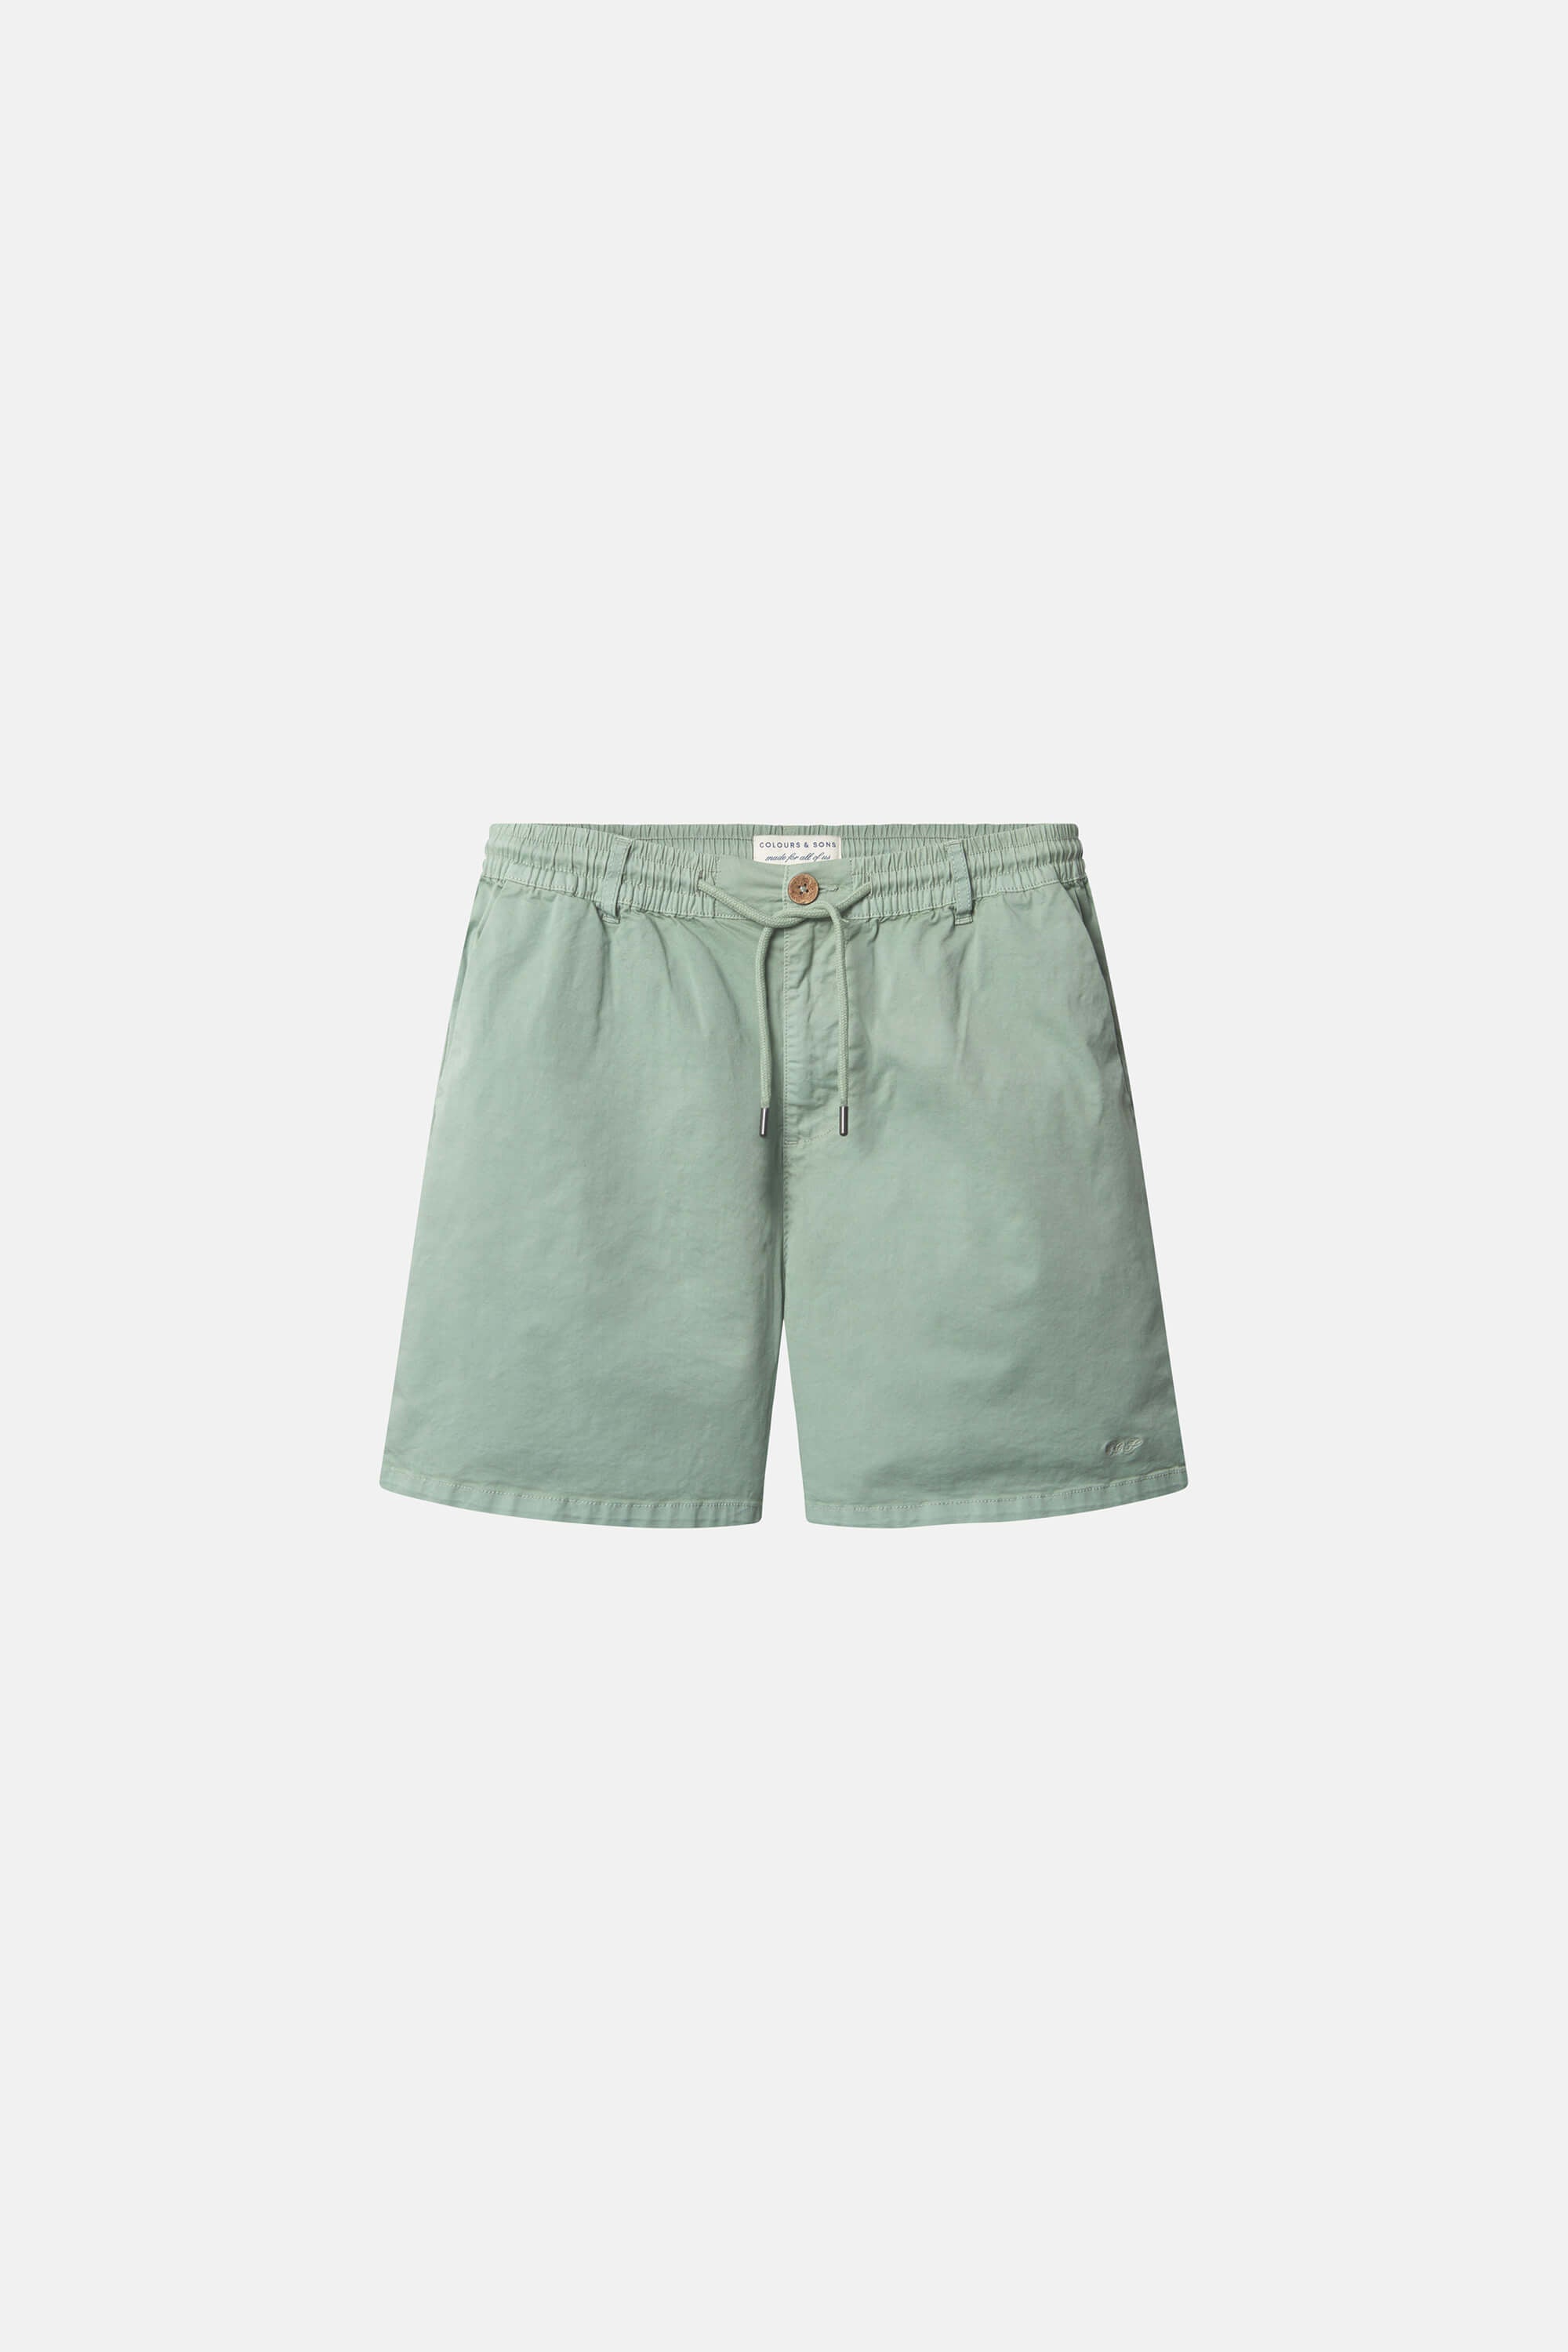 Herren Shorts, grün, 98% Baumwolle 2% Elastan von Colours & Sons